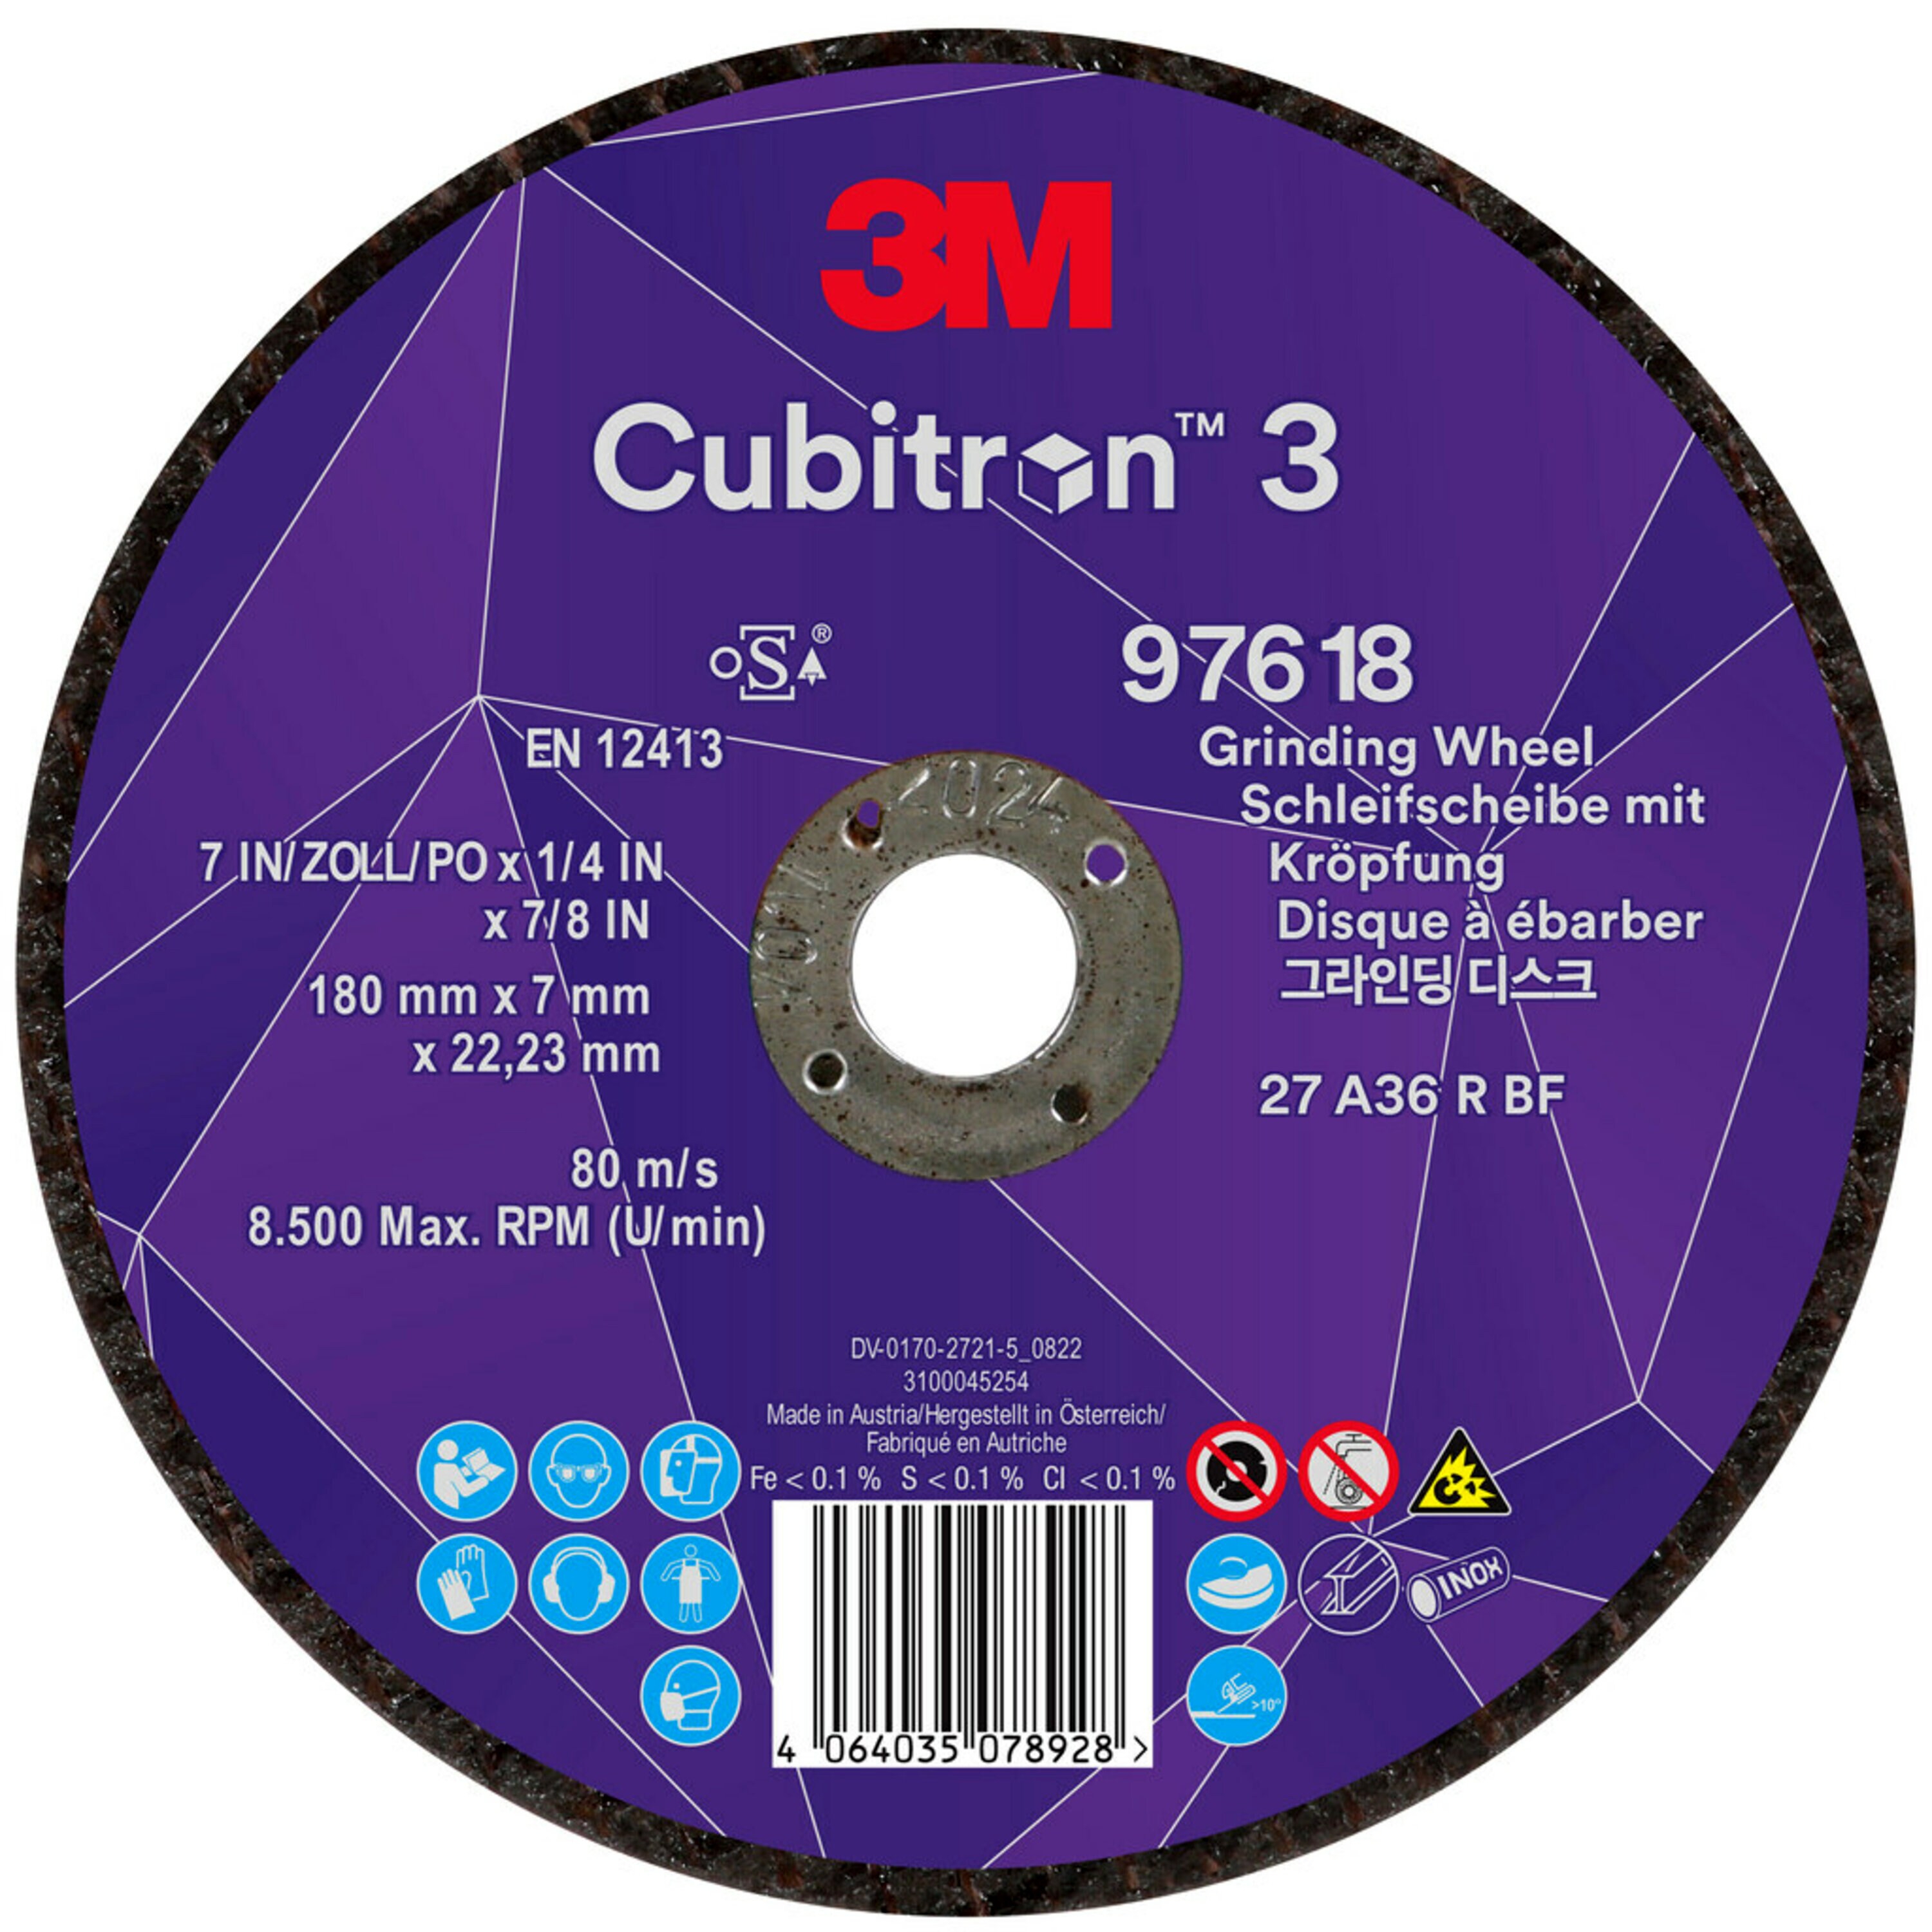 3M Cubitron 3 disque à ébarber, 180 mm, 7,0 mm, 22,23 mm, 36+, type 27, spécialement pour le jointage # 97618